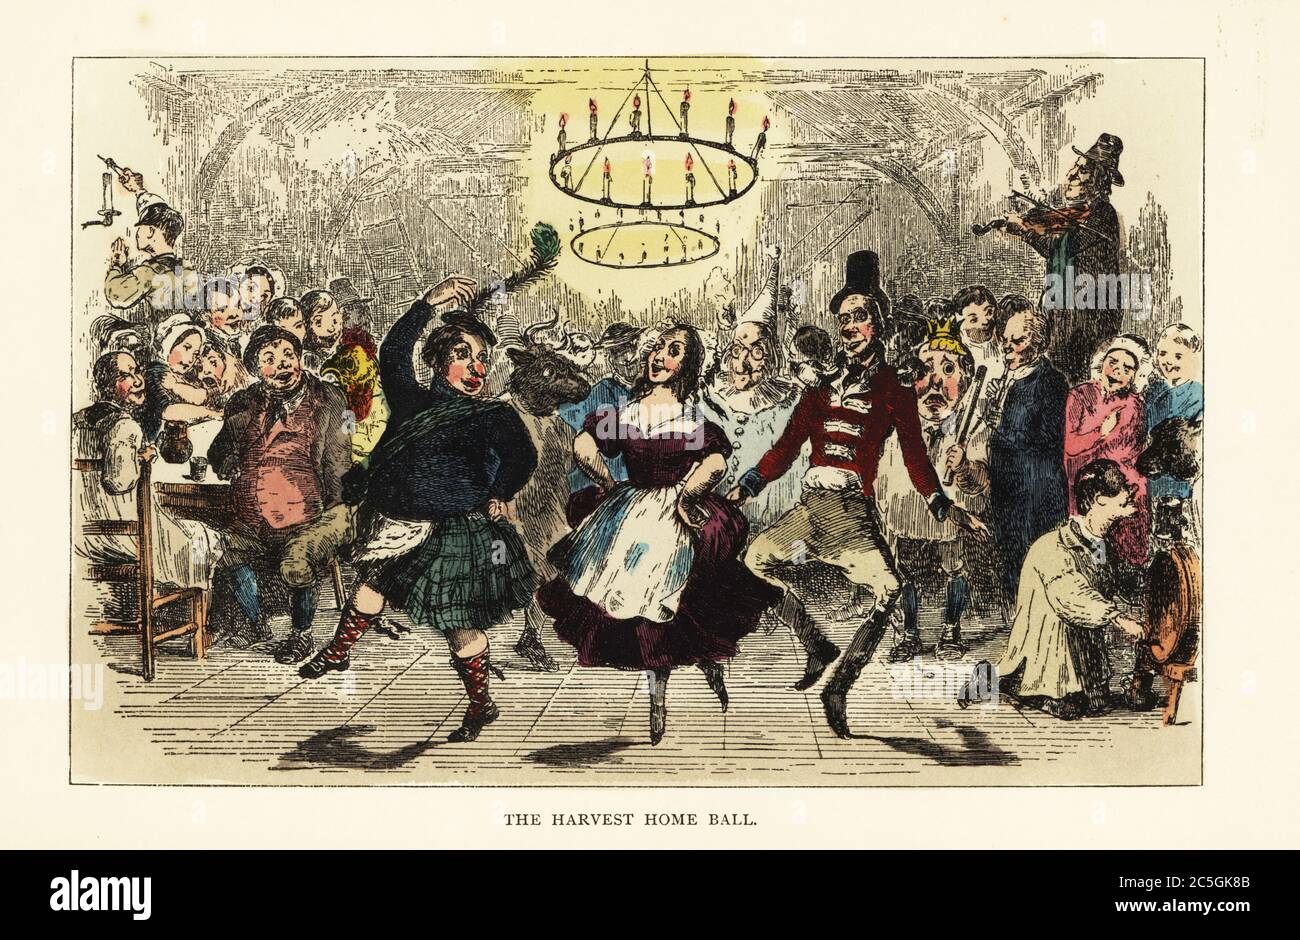 Campesinos y campesinos bailando en un festival de cosecha en un granero con arañas rústicas, siglo 19. Jorrocks como un escocés en un kilt, un hombre en el uniforme de un soldado, otros como payasos, vacas y Humpty Dumpty. La bola de la cosecha. Grabado de acero pintado a mano tras una ilustración de Wildrake, Heath o Jellicoe de Hillingdon Hall de Robert Smith Surtees, o The Cockney Squire, a Tale of Country Life, John C. Nimmo., Londres, 1844. Foto de stock